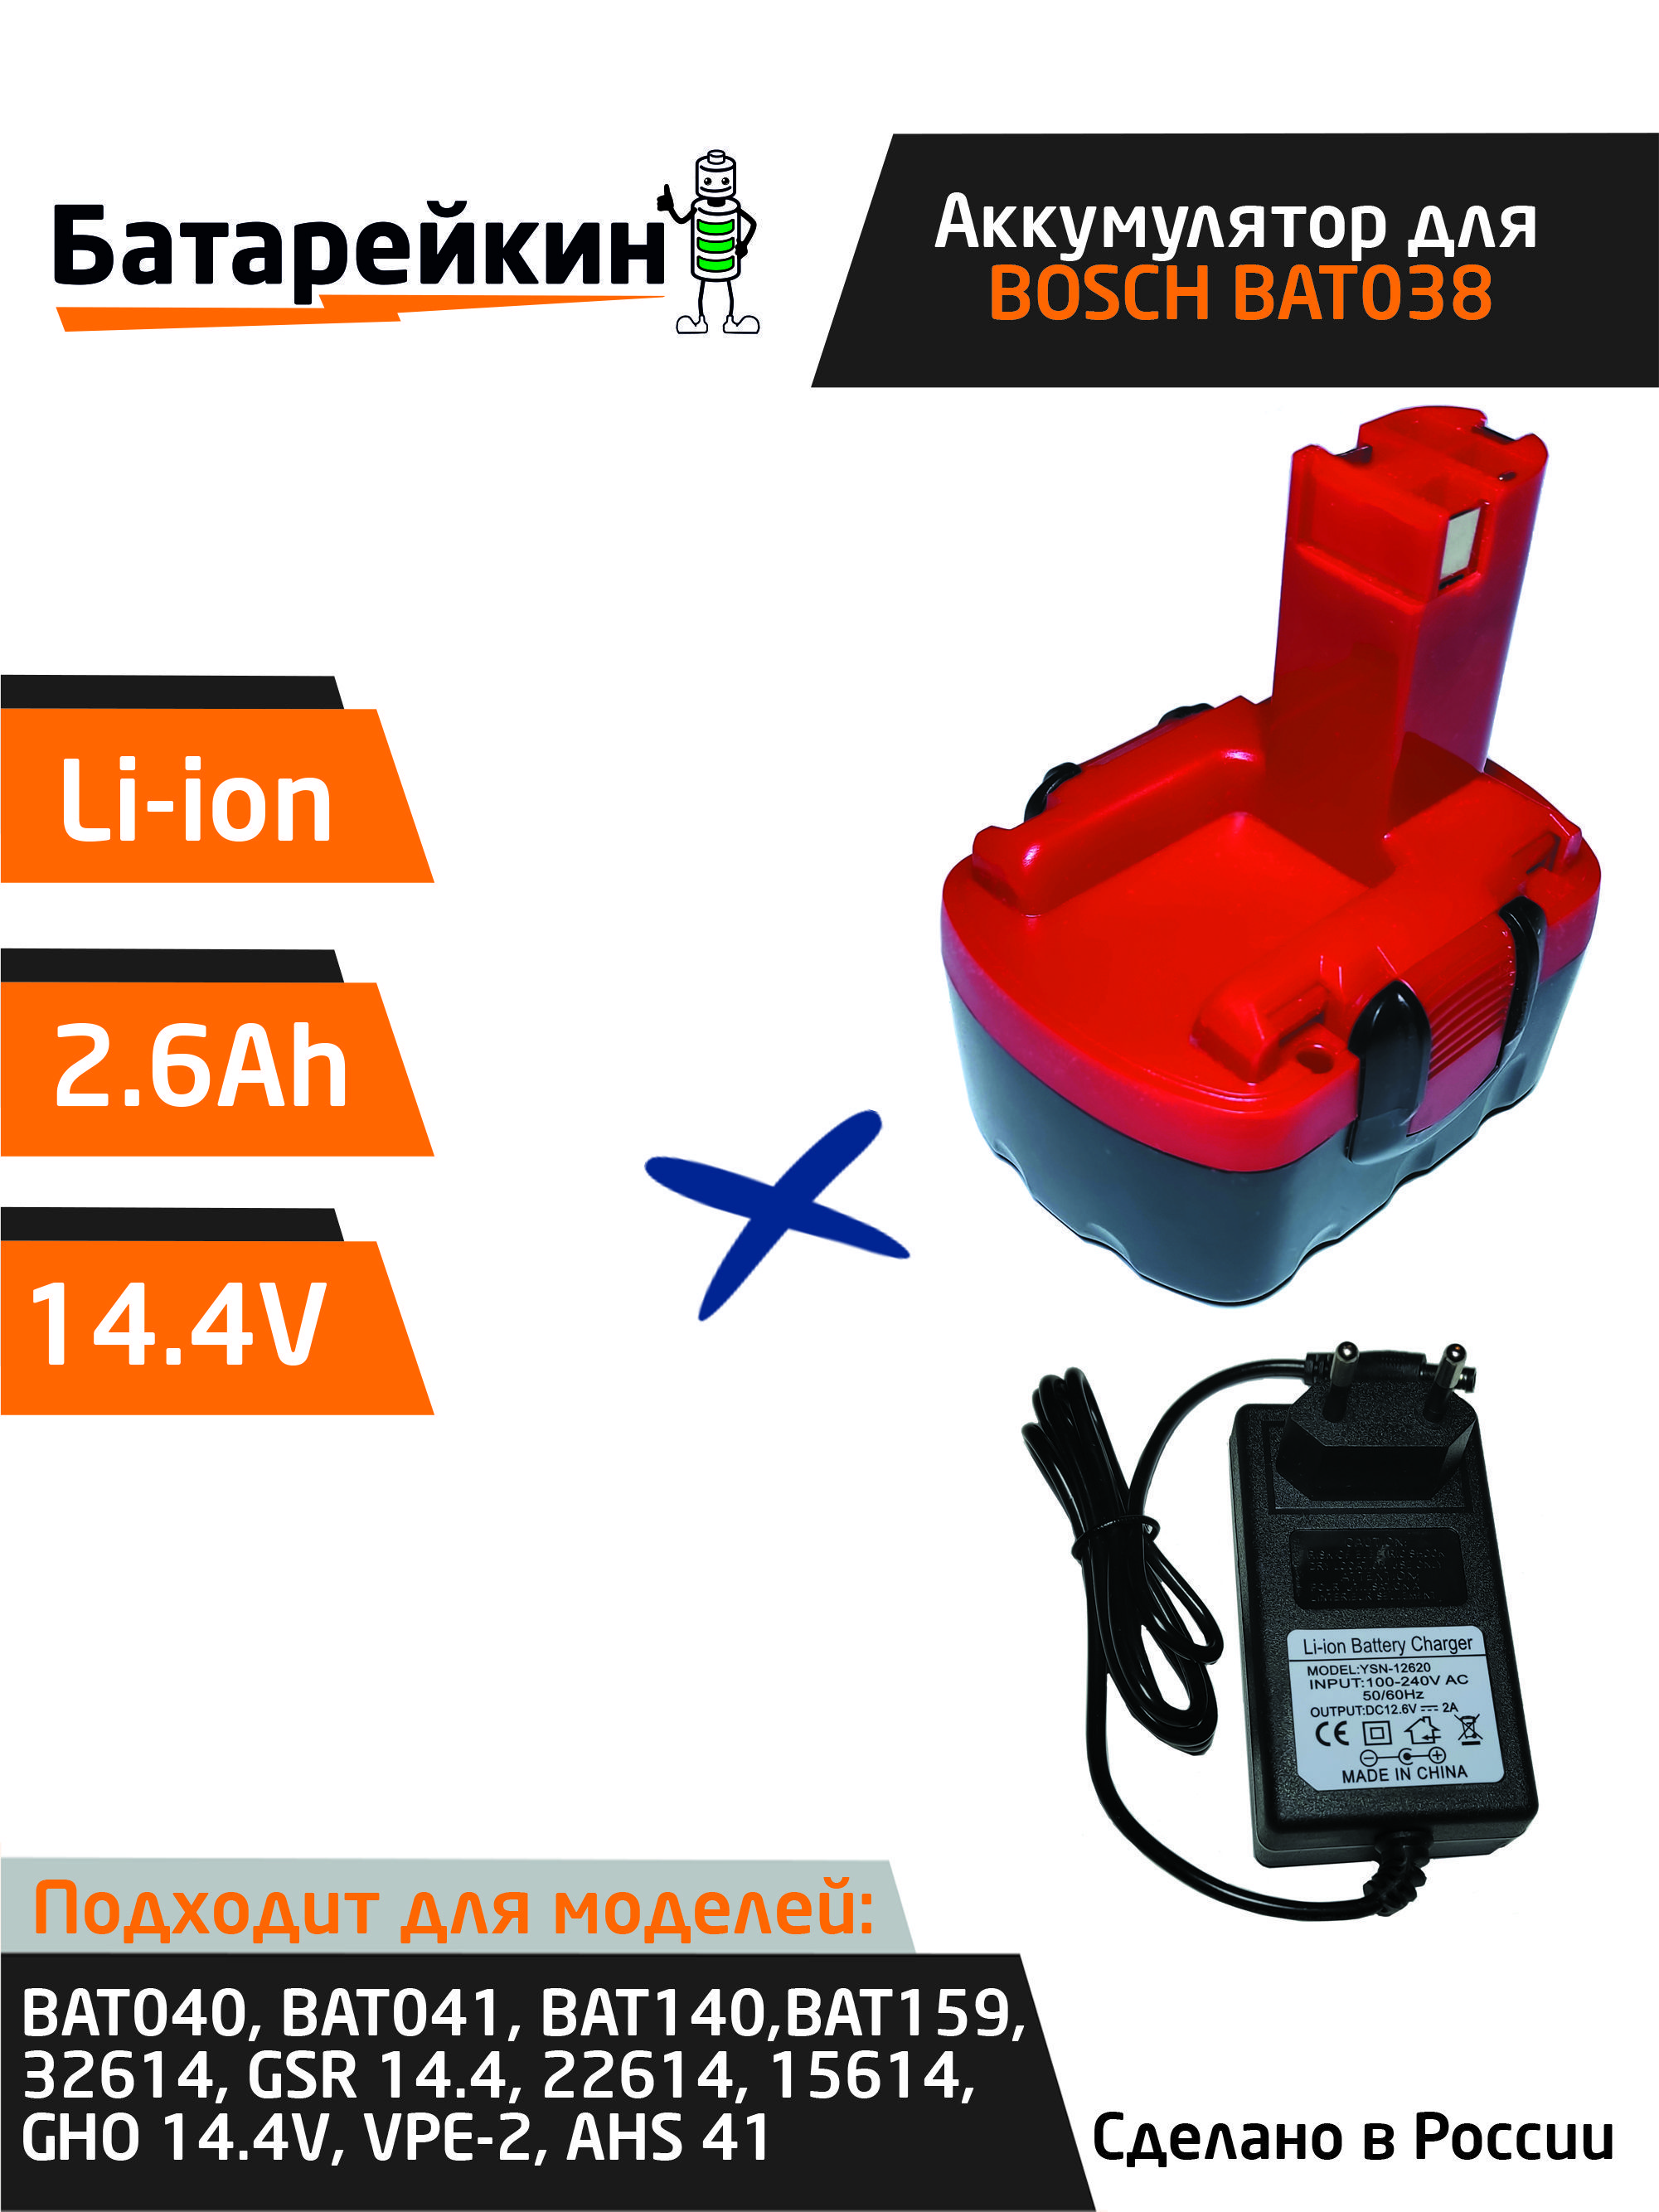 Аккумулятор для шуруповерта BOSCH 14.4V 2.6Ah Li-Ion + зарядное устройство